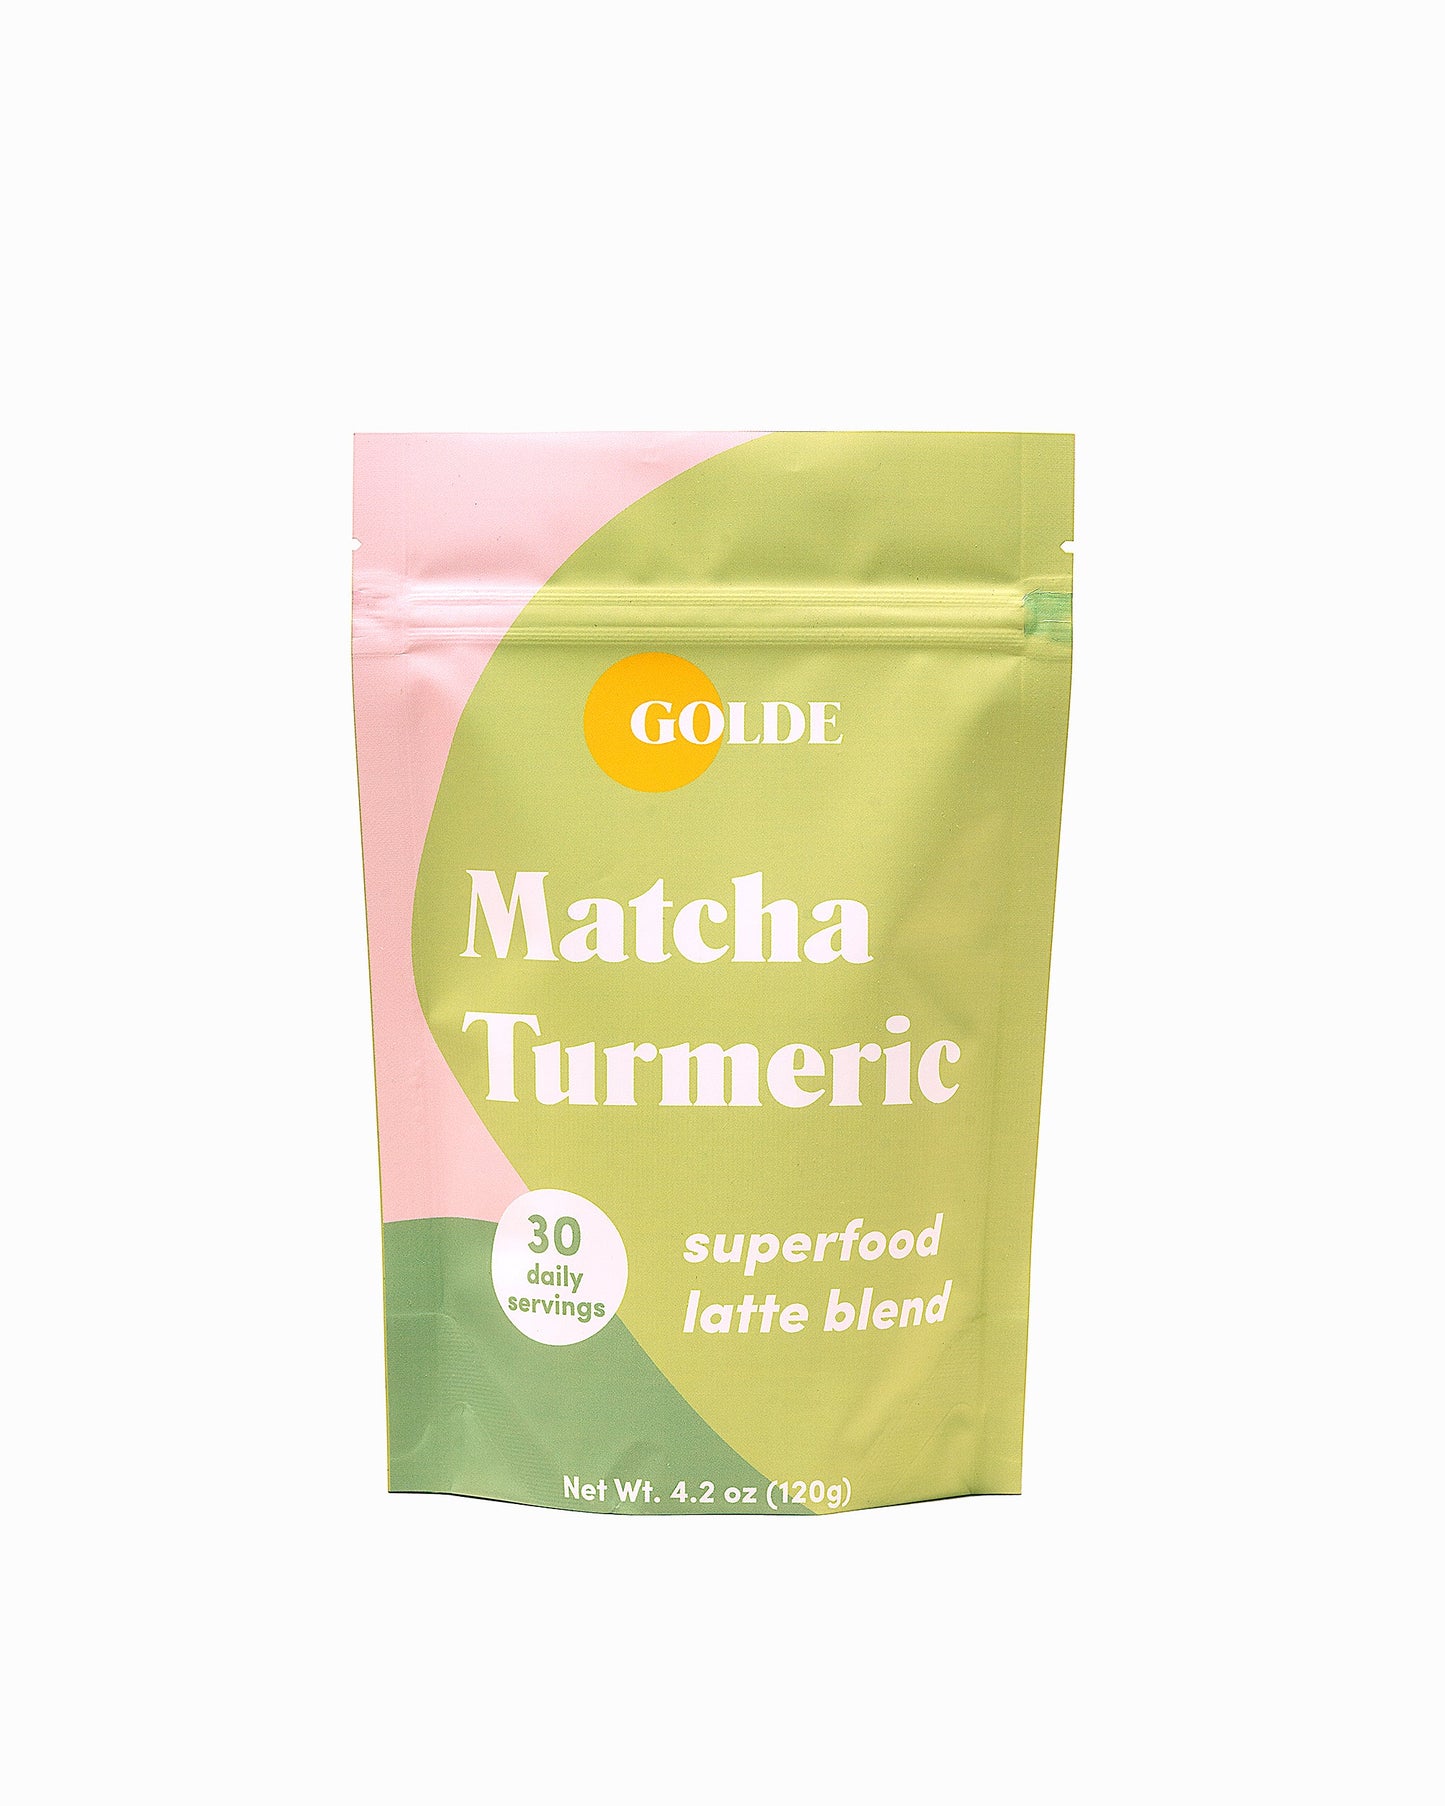 Golde: Matcha Turmeric Latte Blend